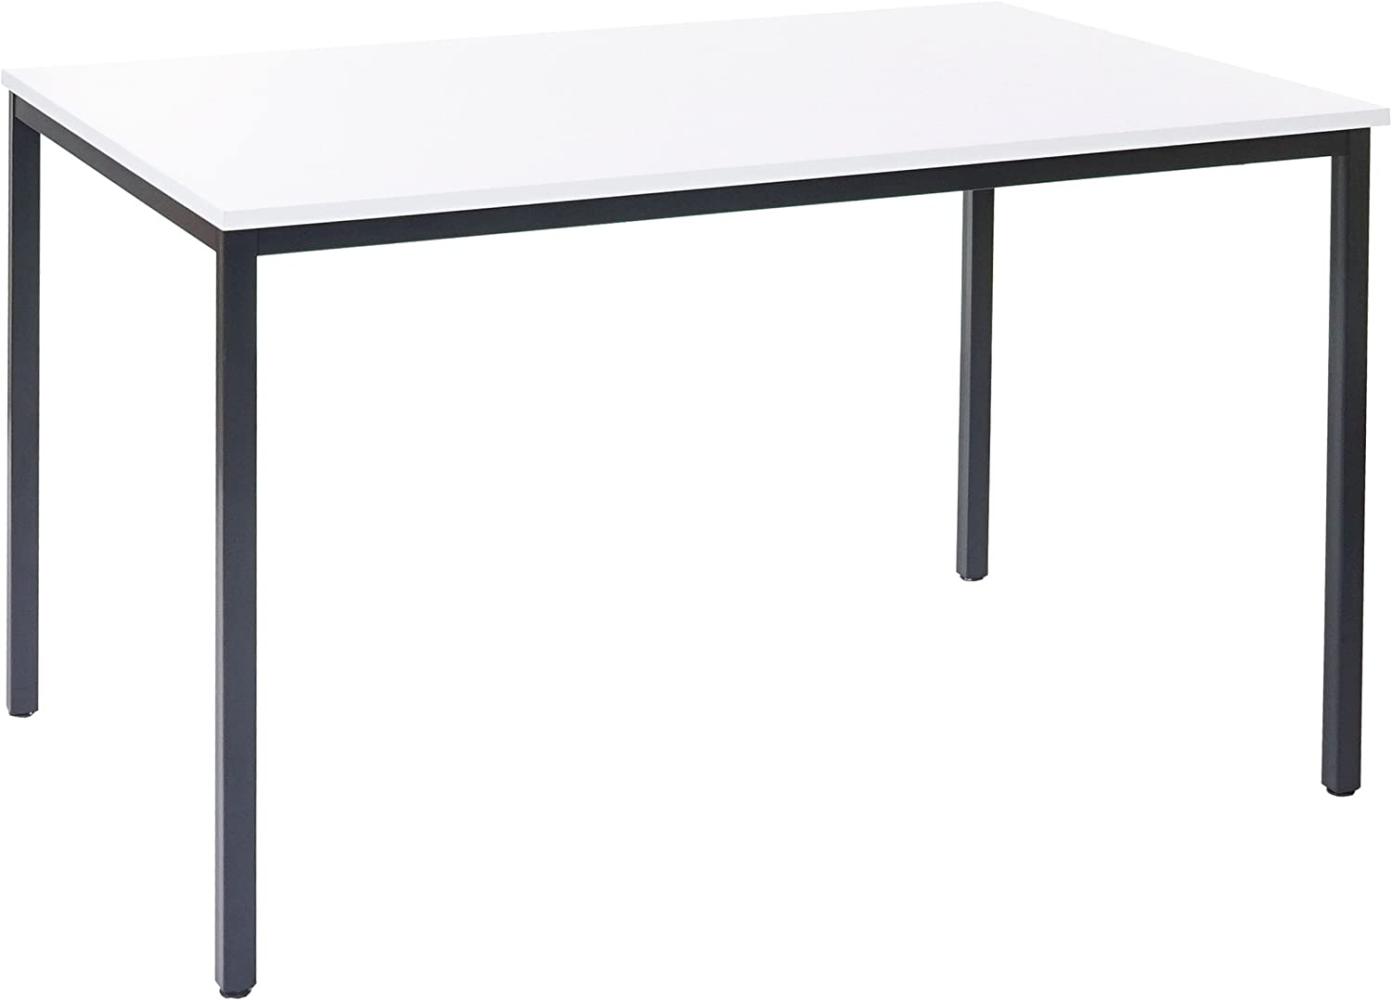 'Braila' Schreibtisch, weiß, MDF, 160x80 cm Bild 1